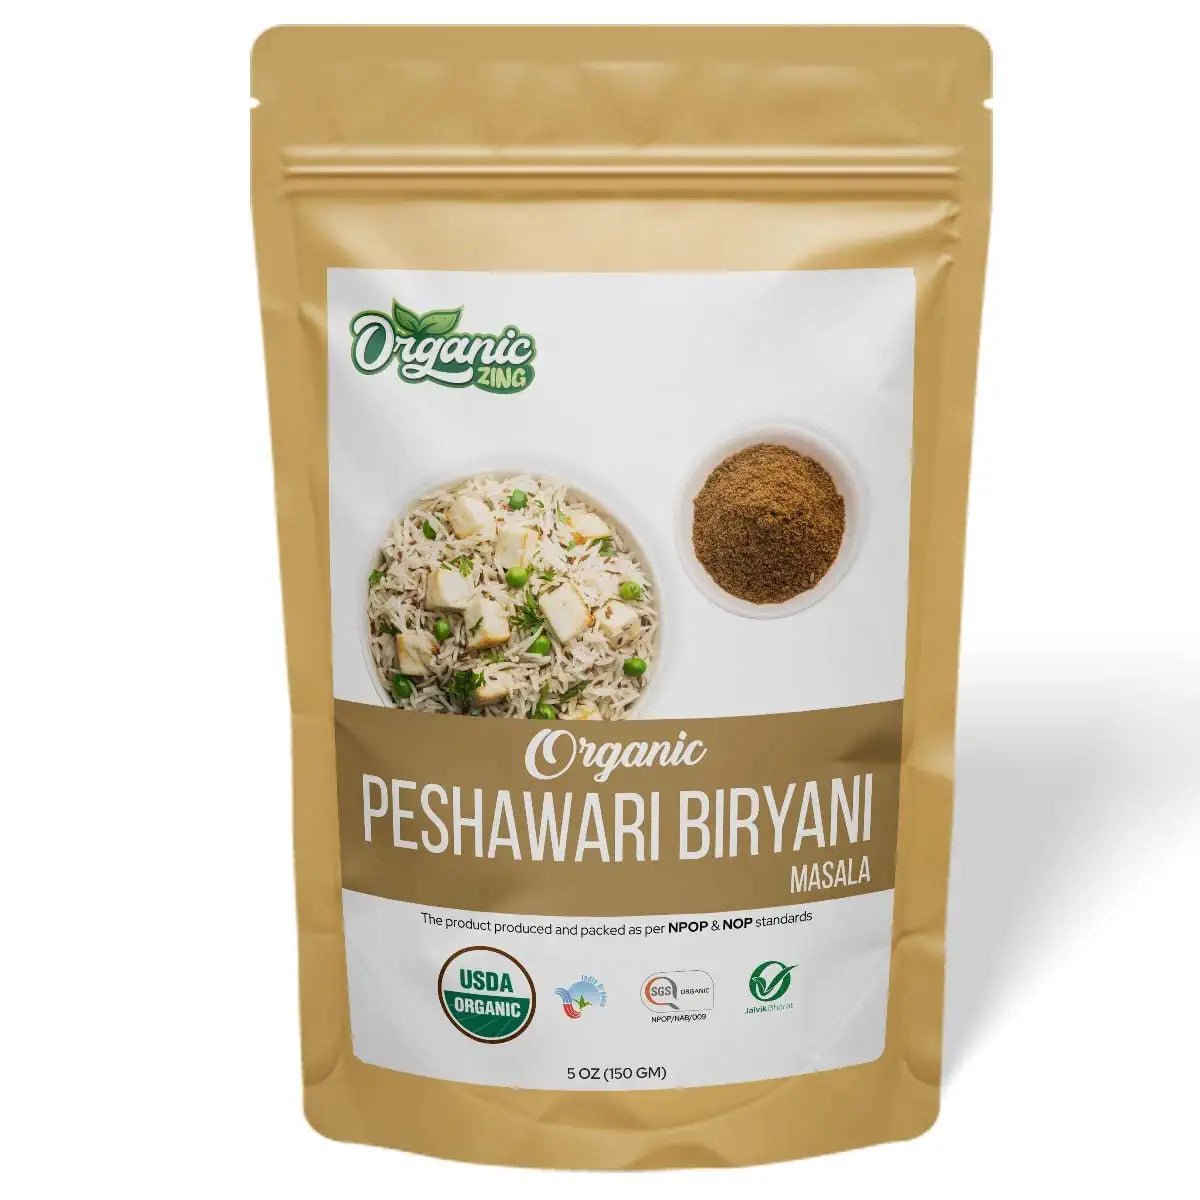 Shoprythm Organic Spices 150g Organic Peshawari Biryani Masala